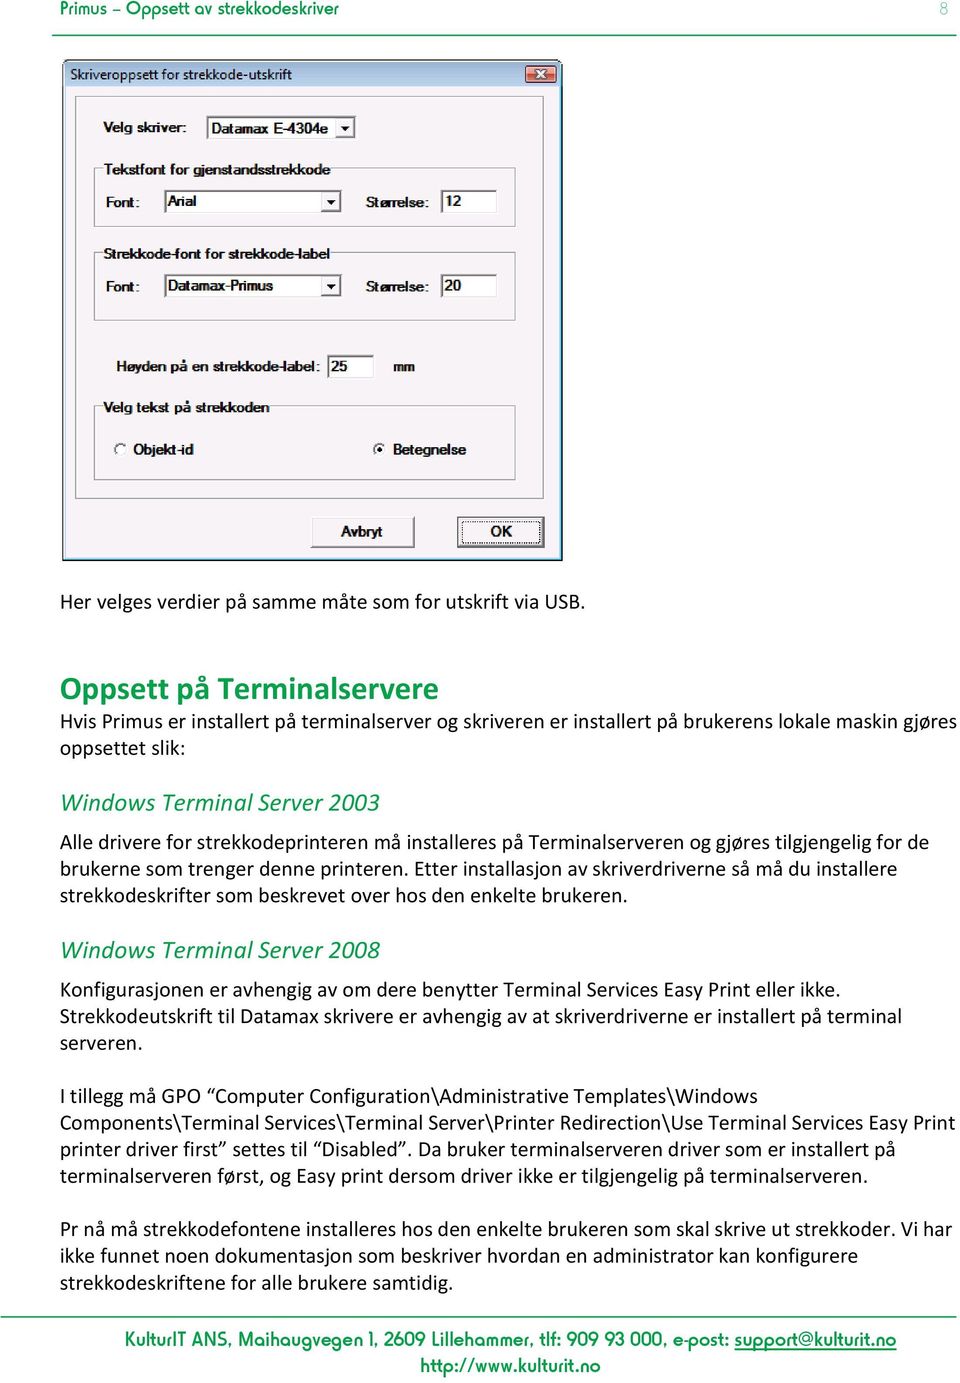 strekkodeprinteren må installeres på Terminalserveren og gjøres tilgjengelig for de brukerne som trenger denne printeren.